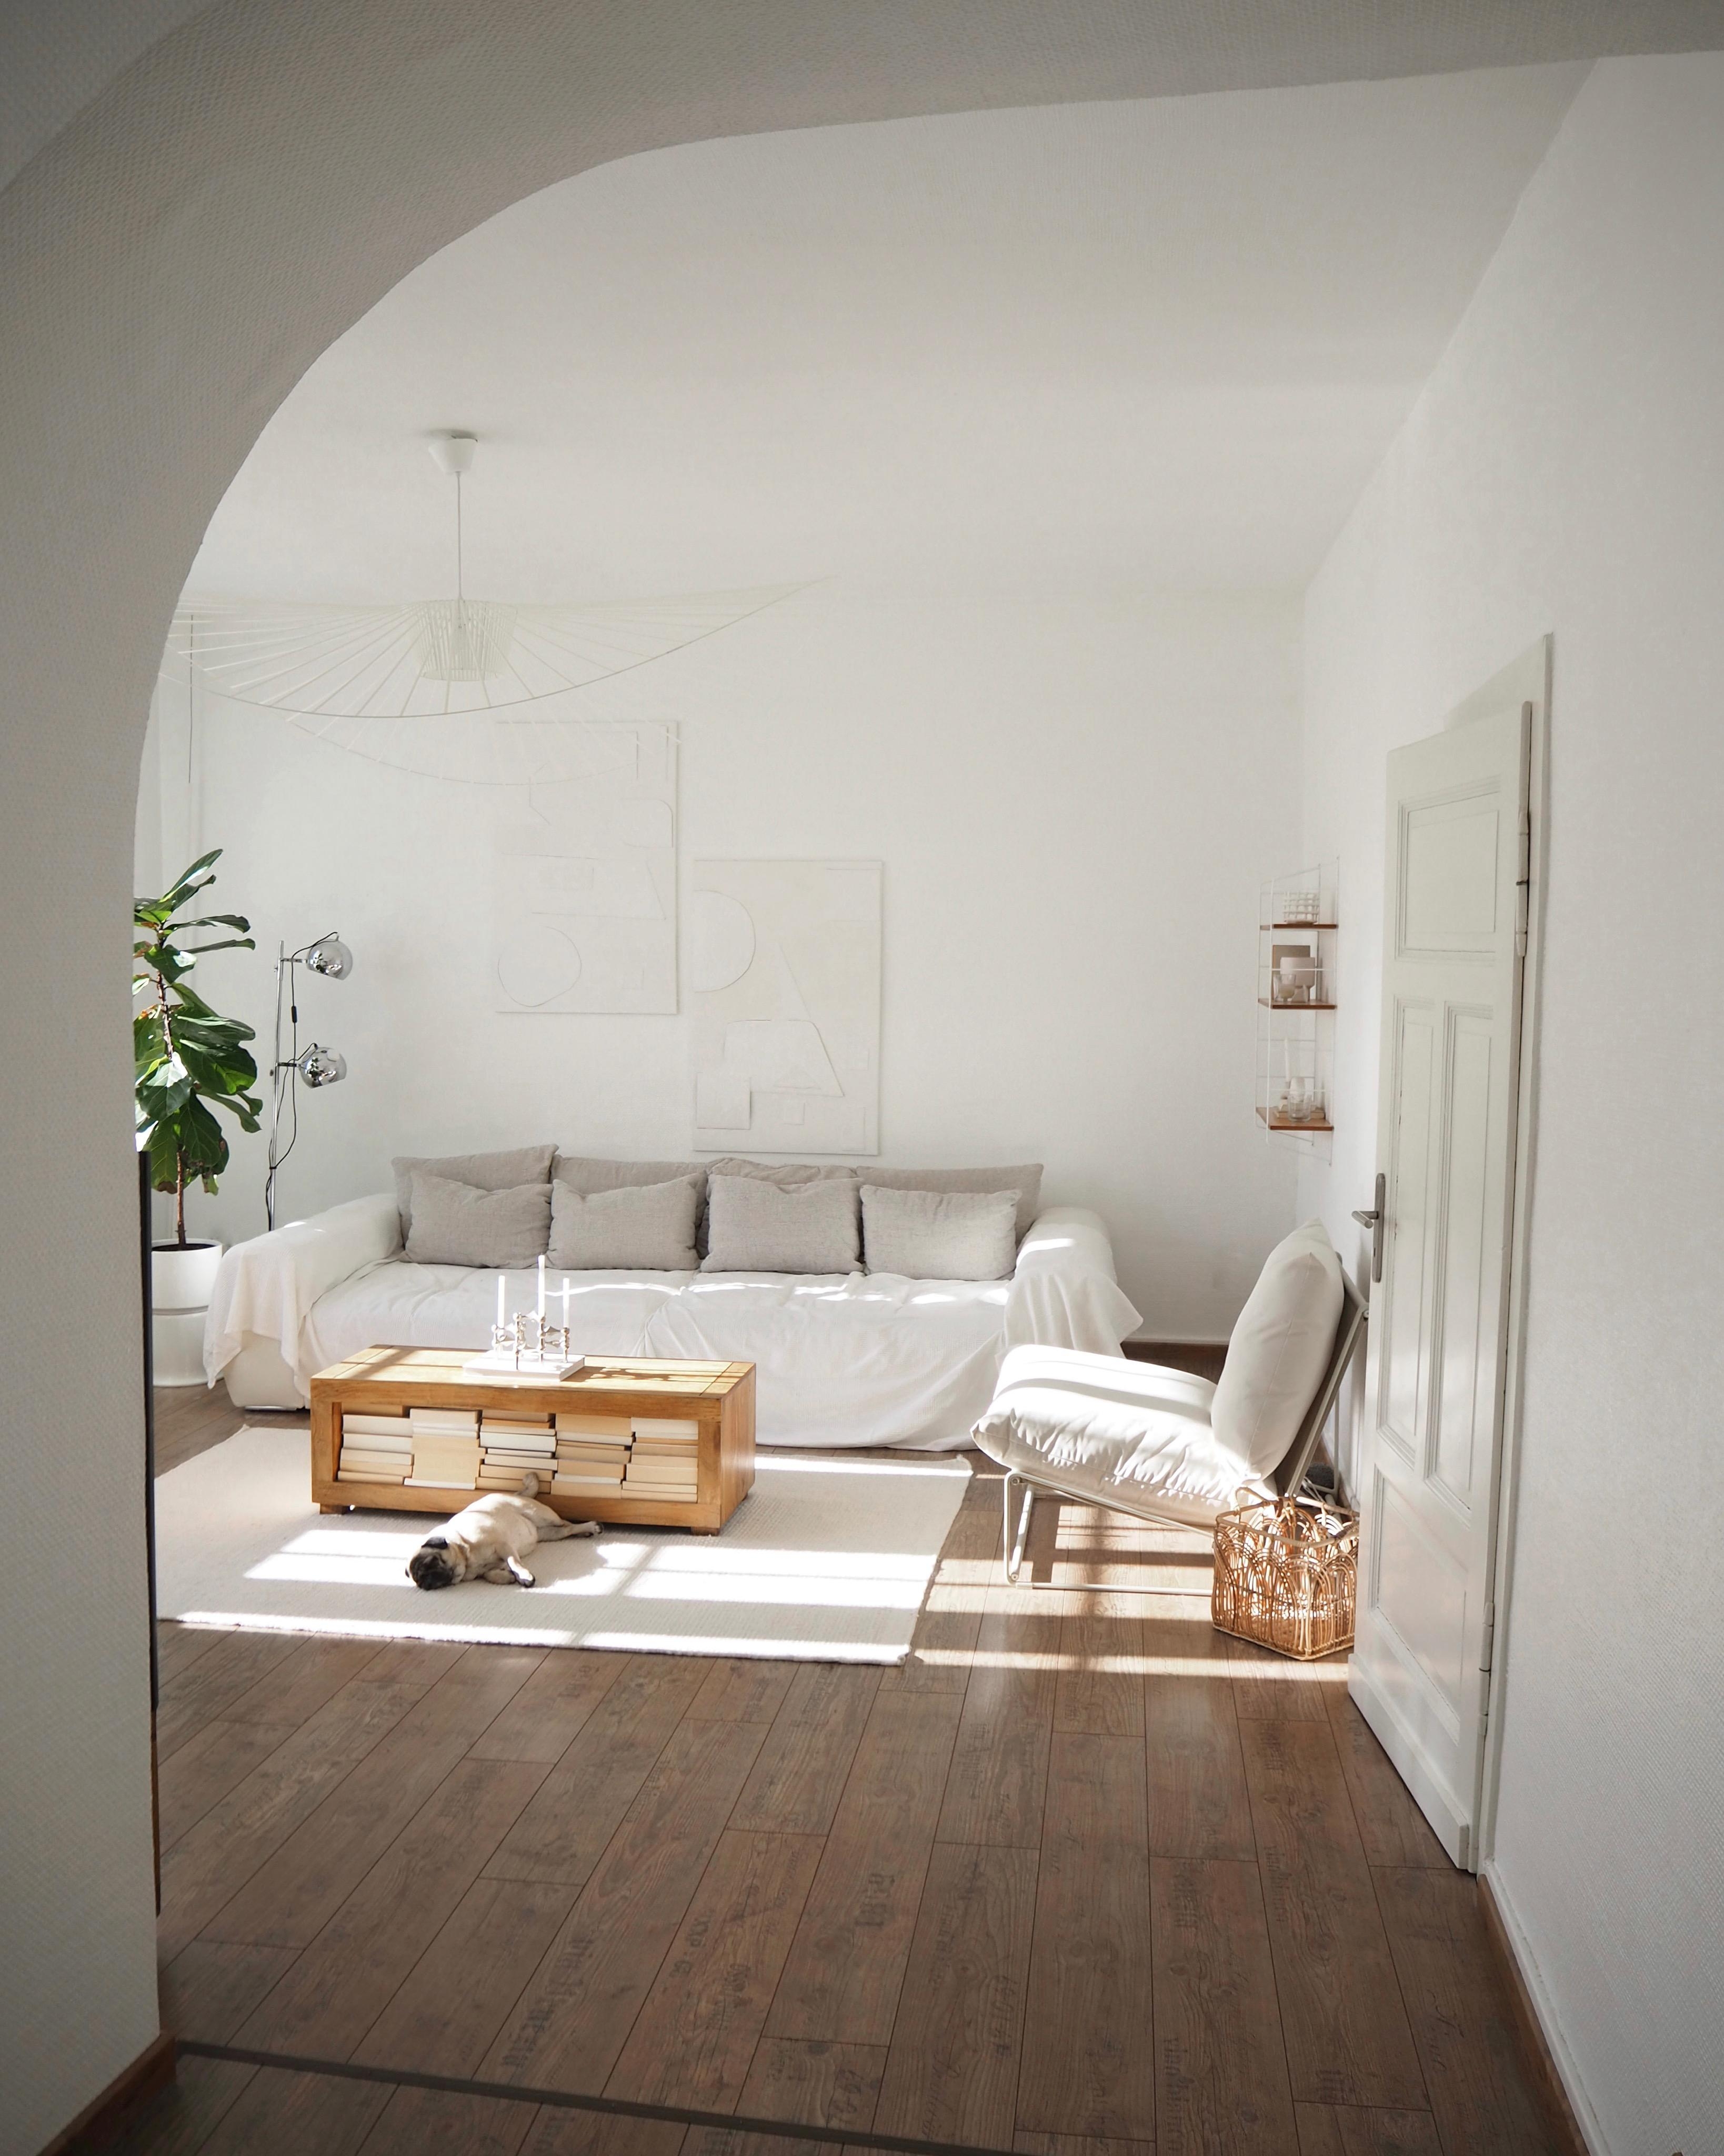 letztes #sofa Bild #wohnzimmer #couch #couchtisch #deckenlampe #rundbogen #wohnraum #sessel #sonne #altbau